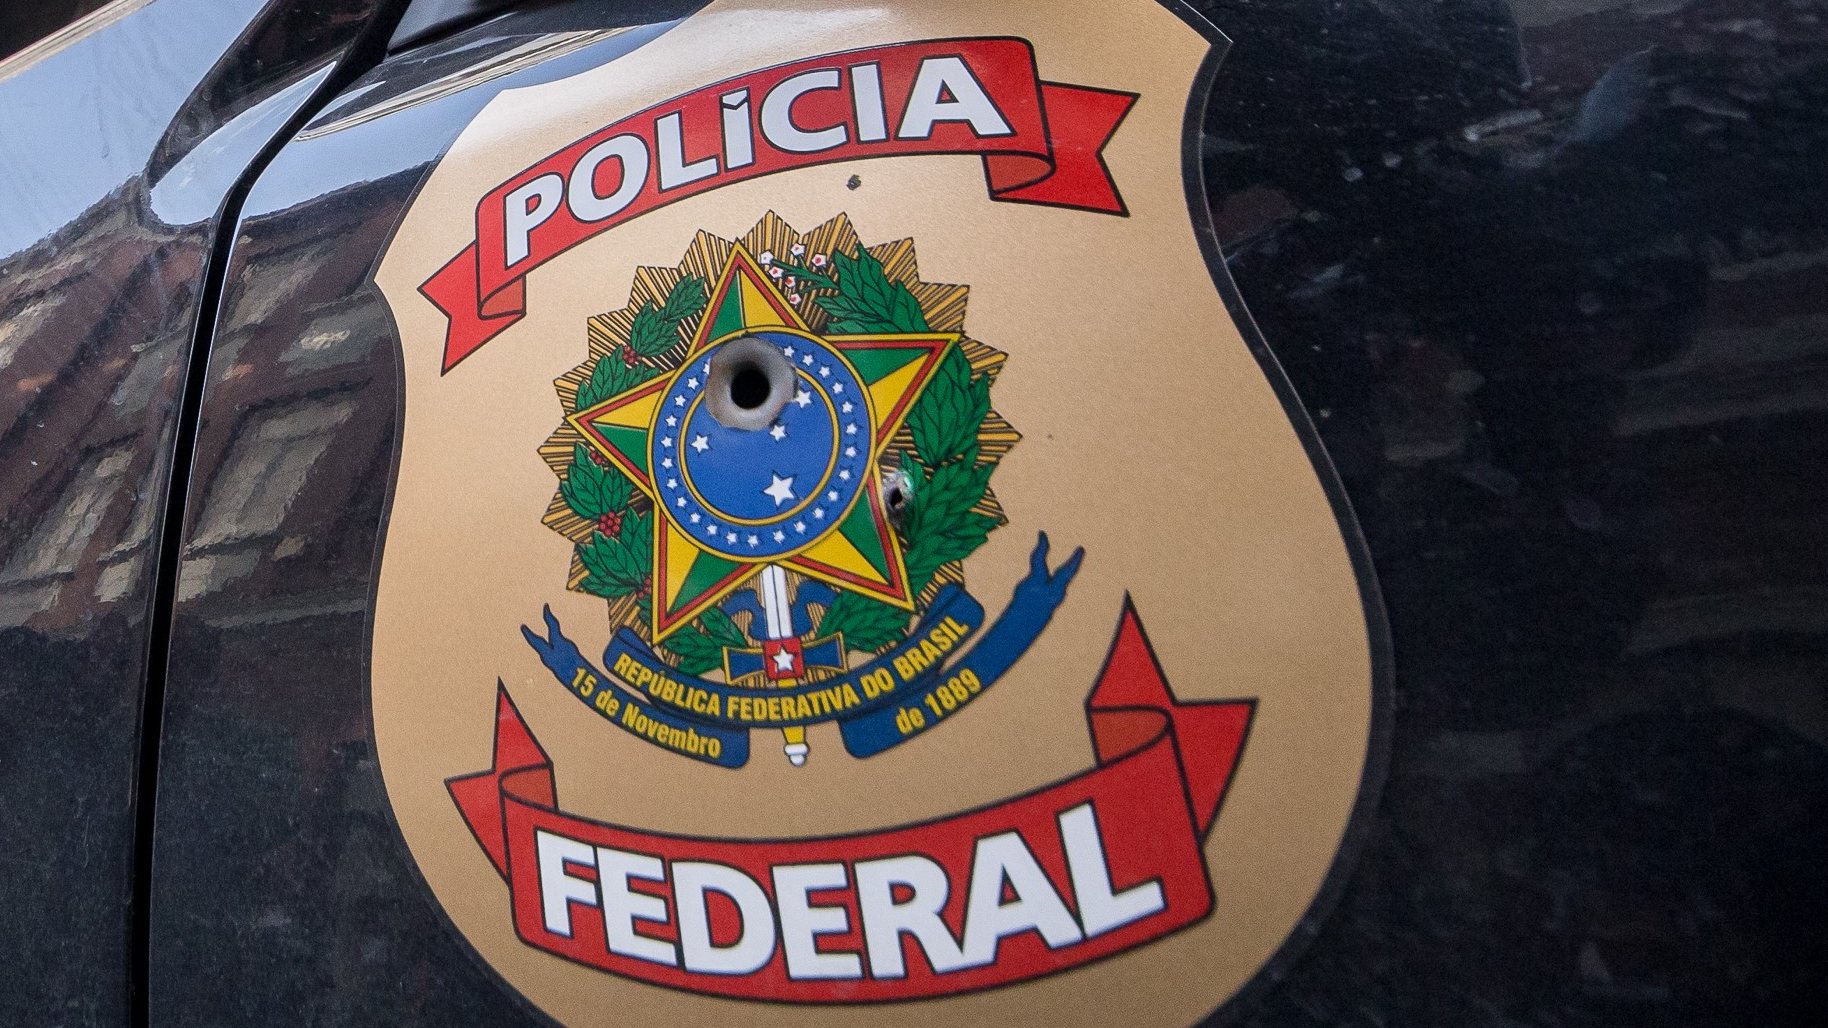 Carro da Polícia Federal Brasileira - São Paulo